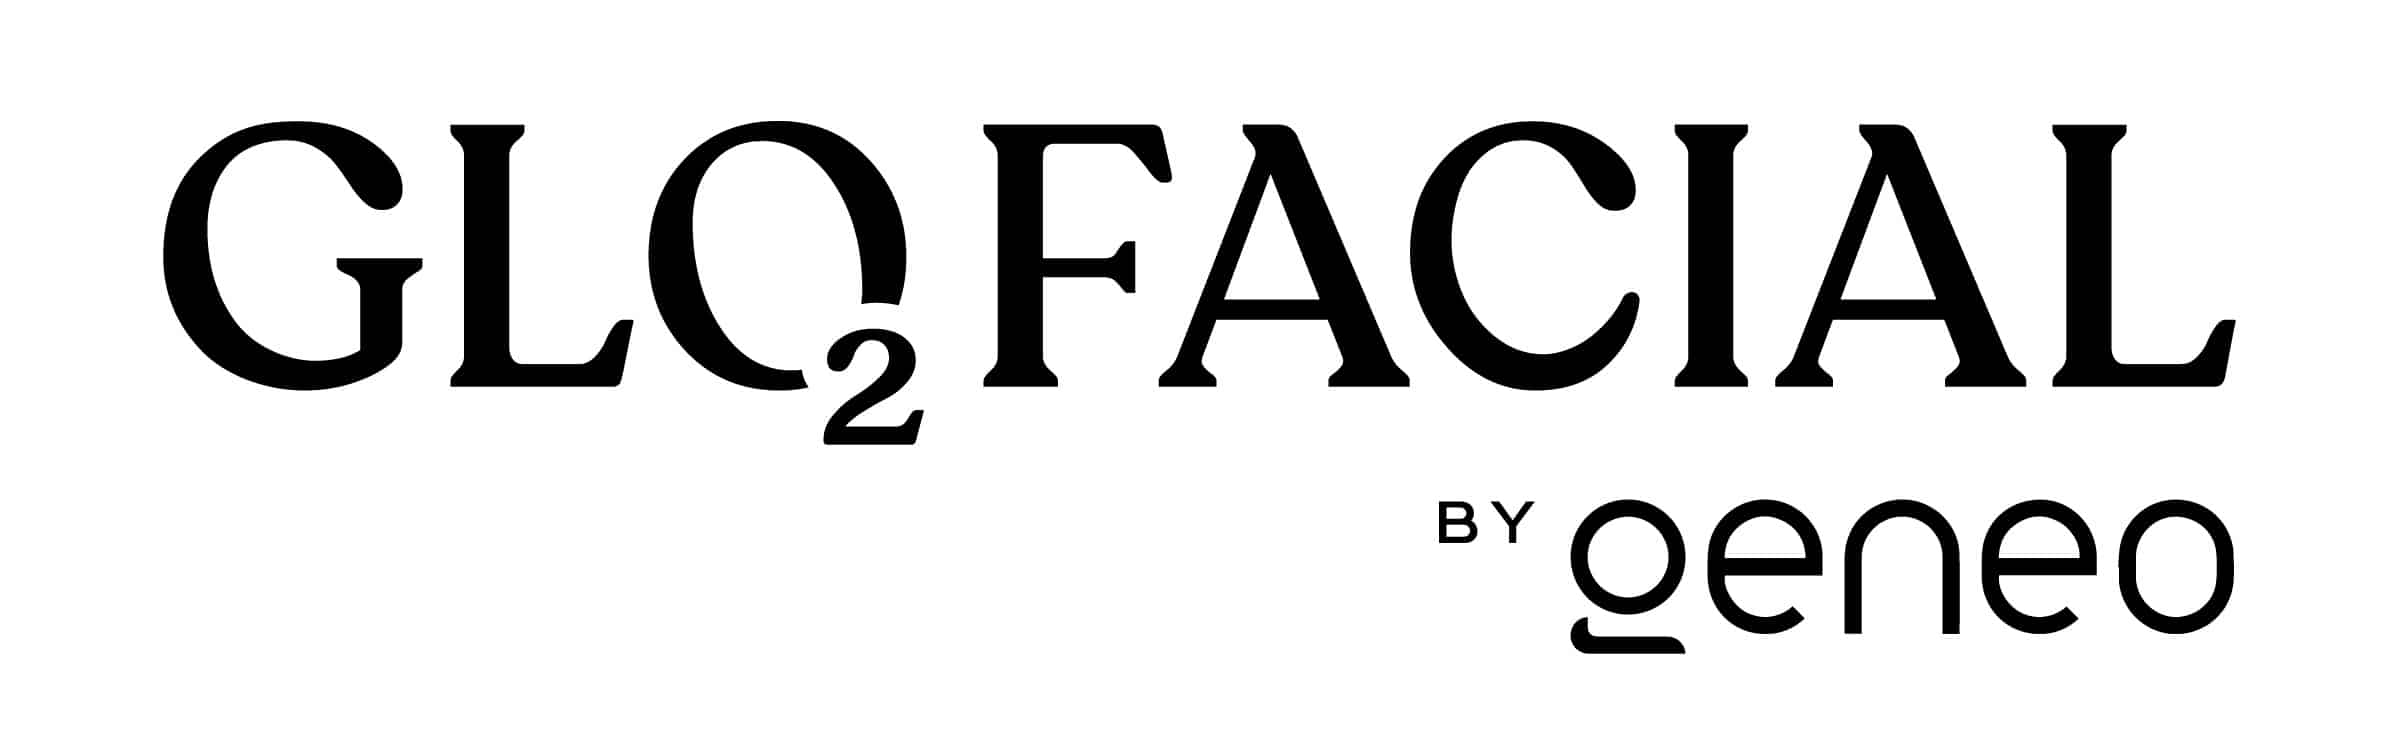 Glo2facial logo